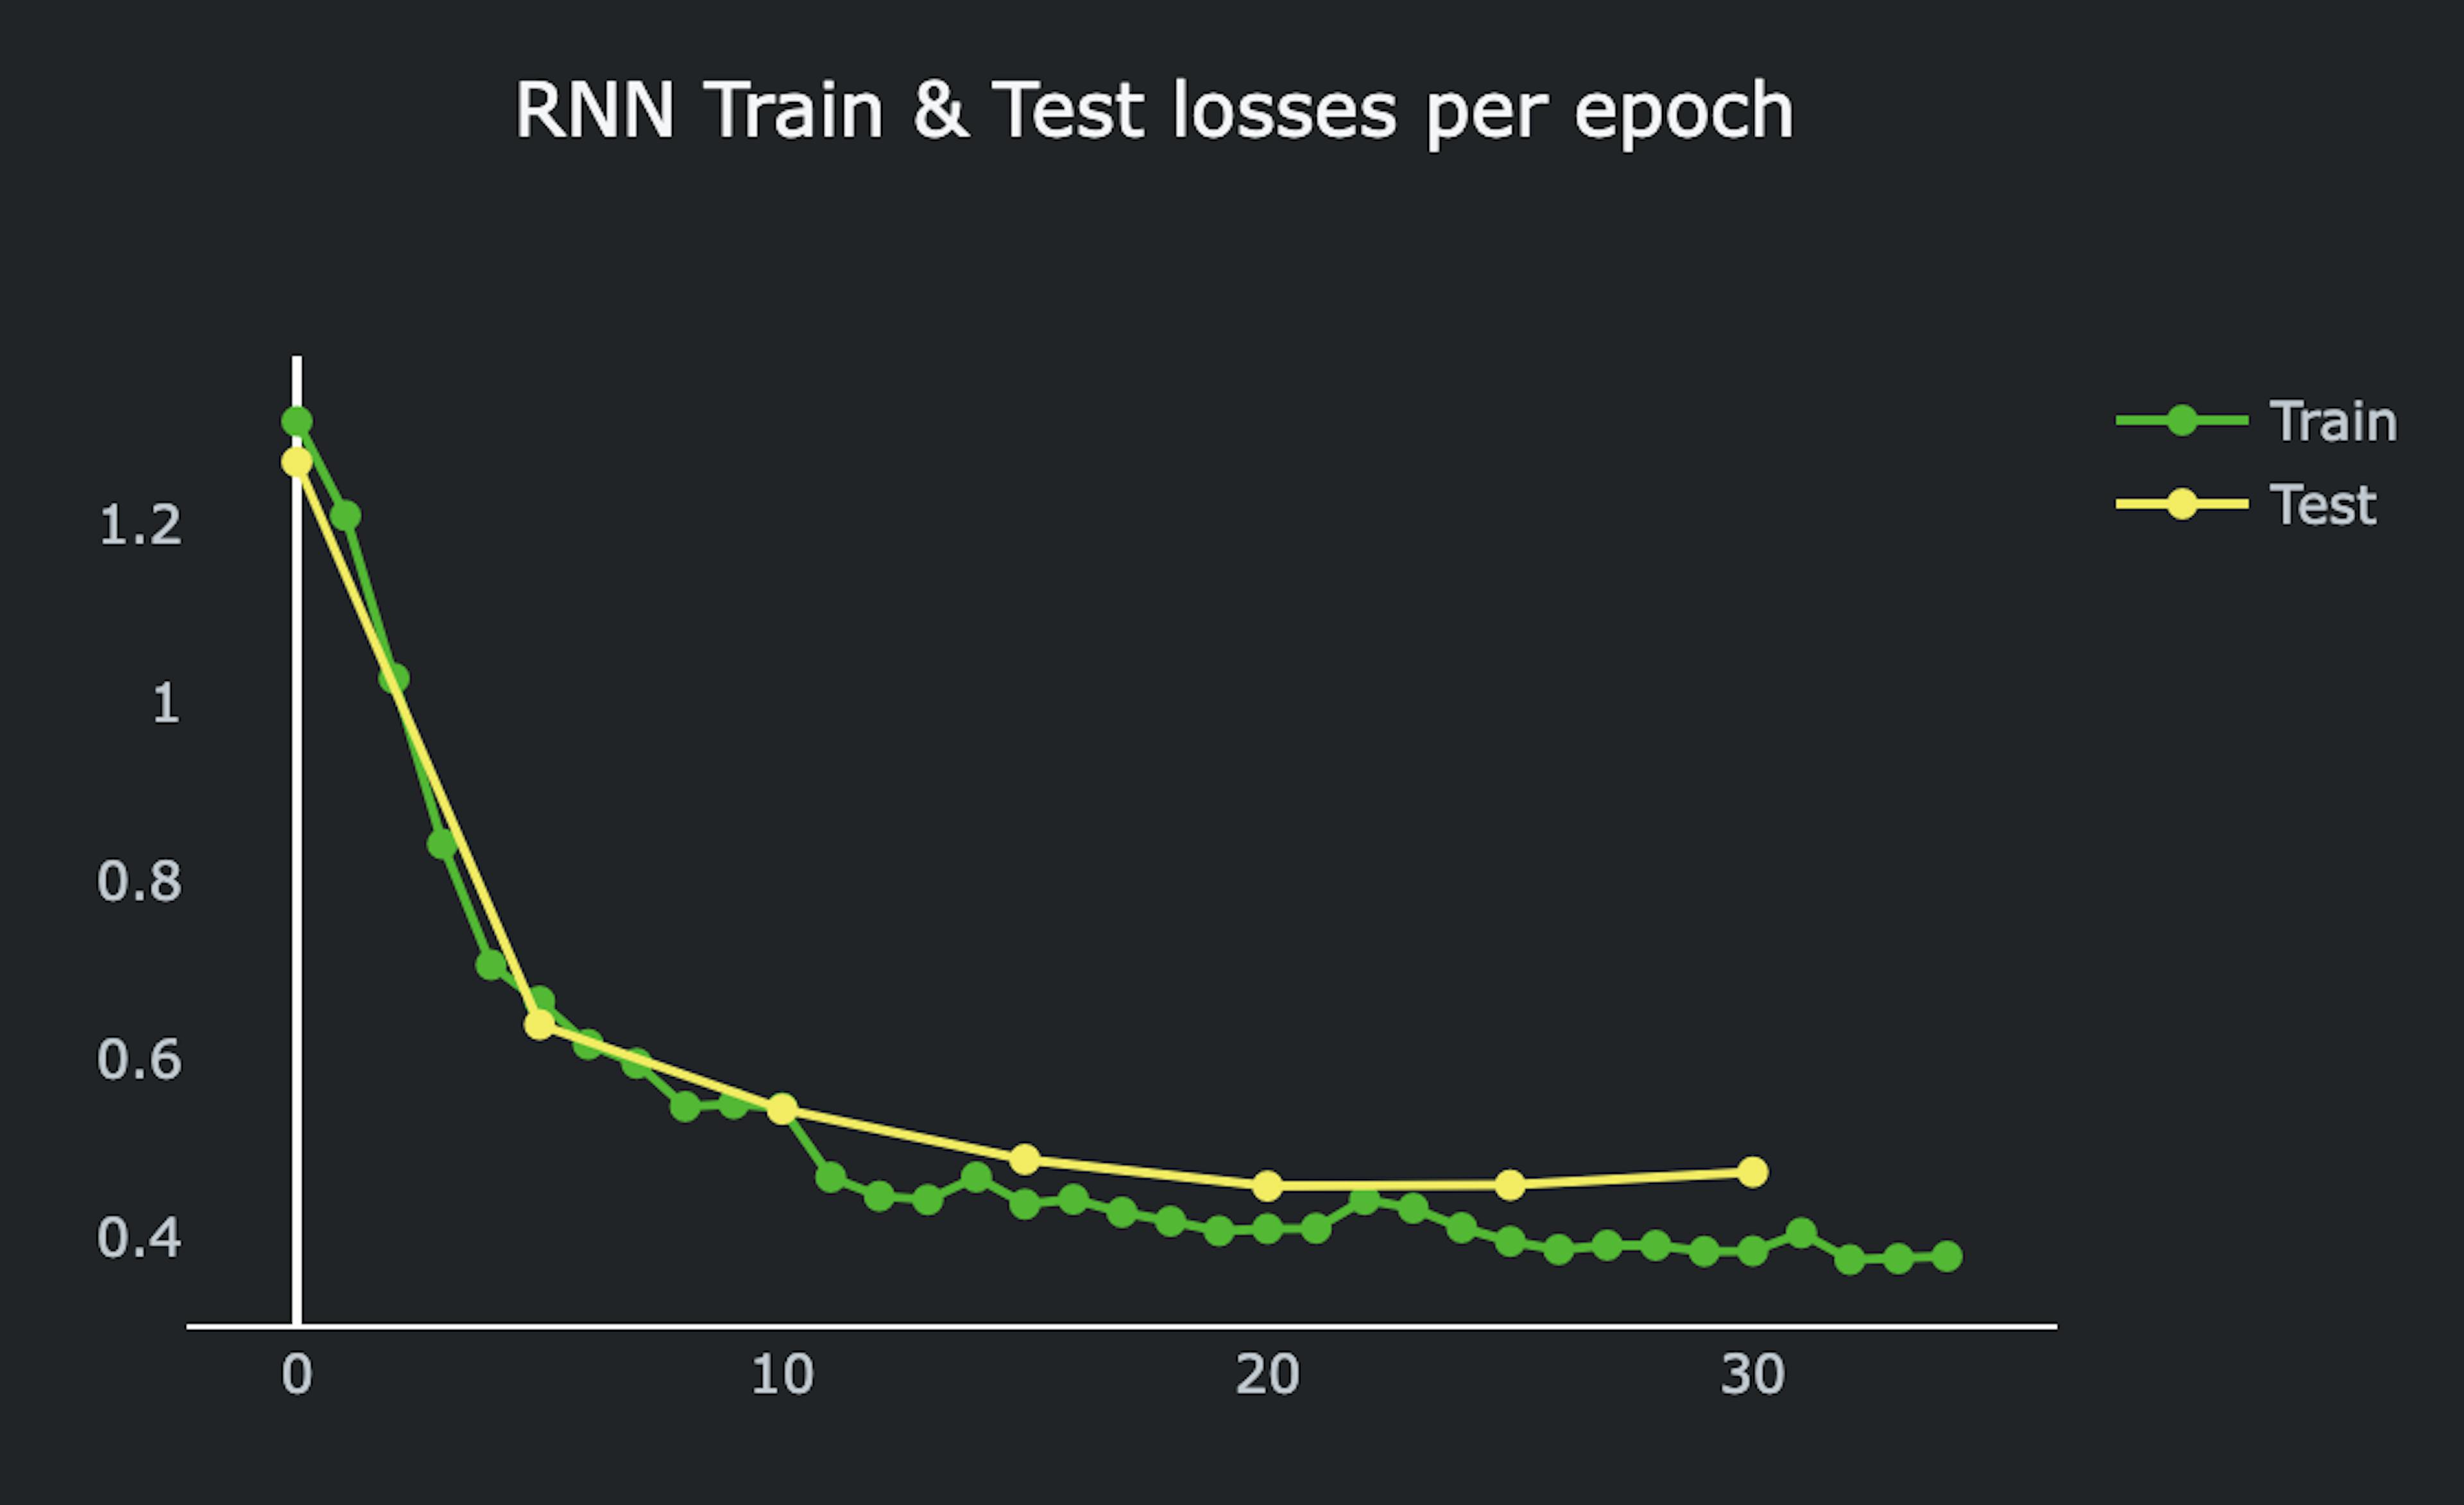 Perdas de treinamento e teste por época, modelo RNN